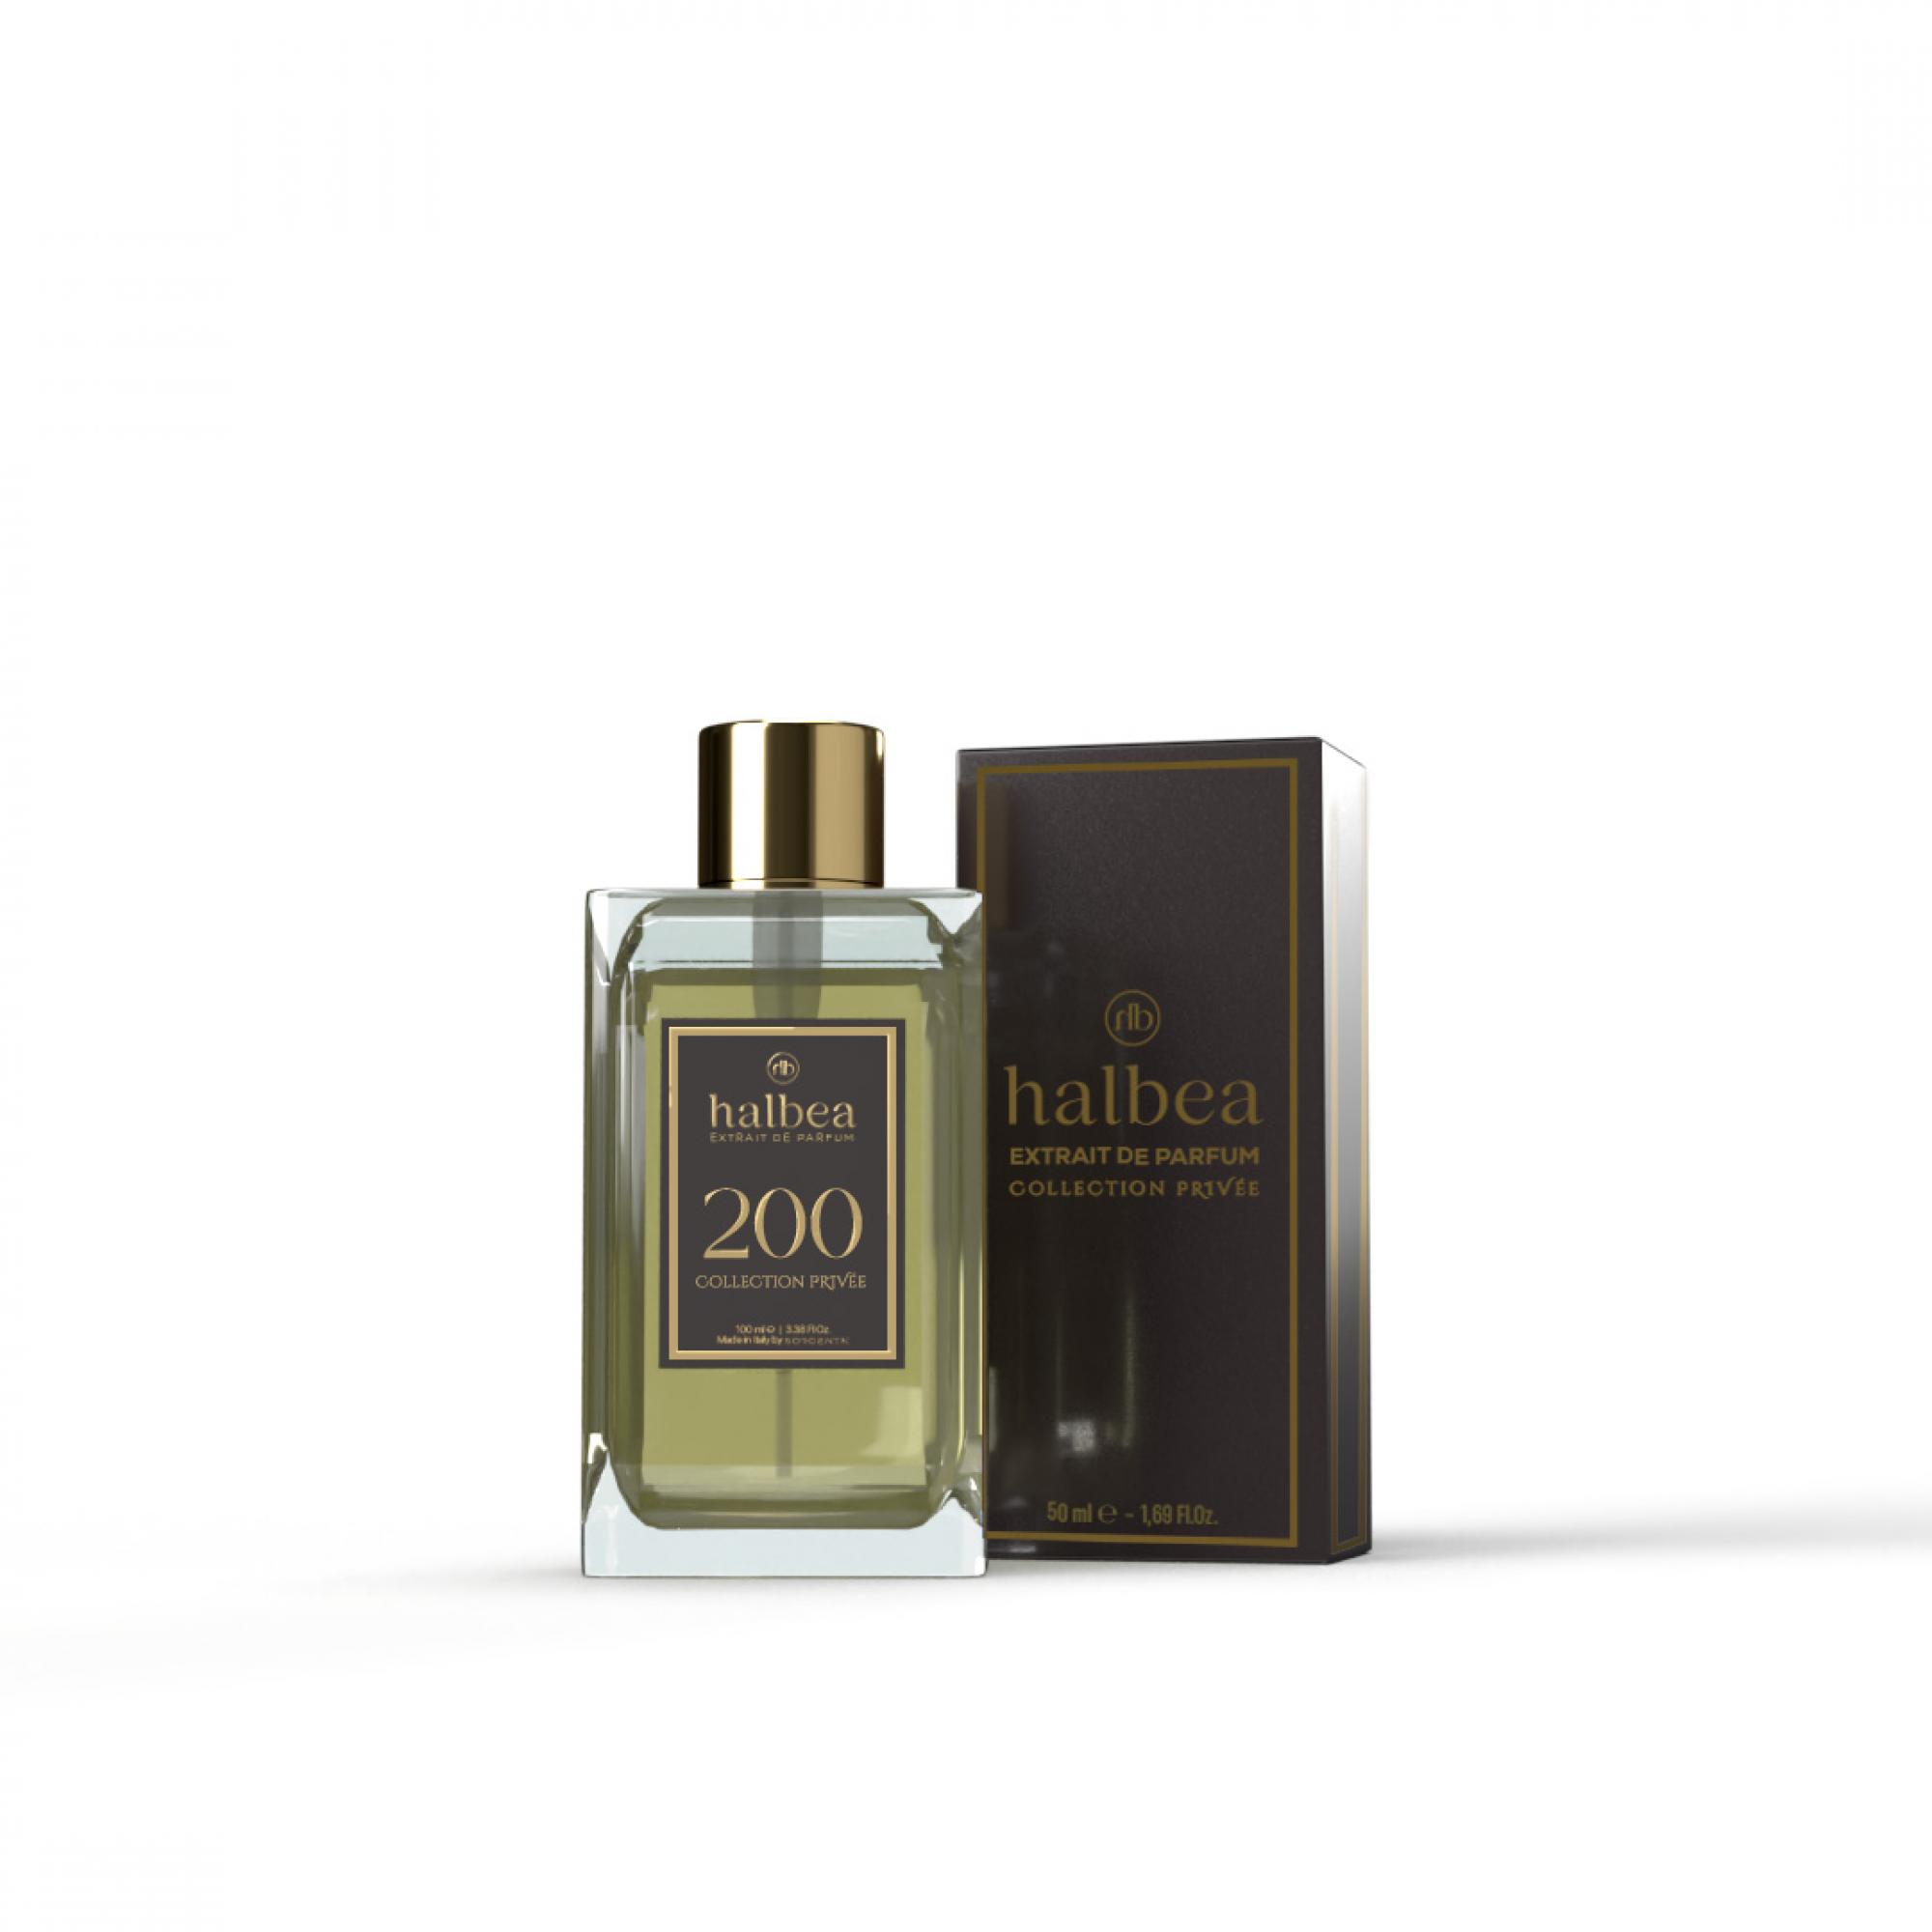 Halbea Parfum Nr. 200 insp. by Baccarat Rouge 540 100ml